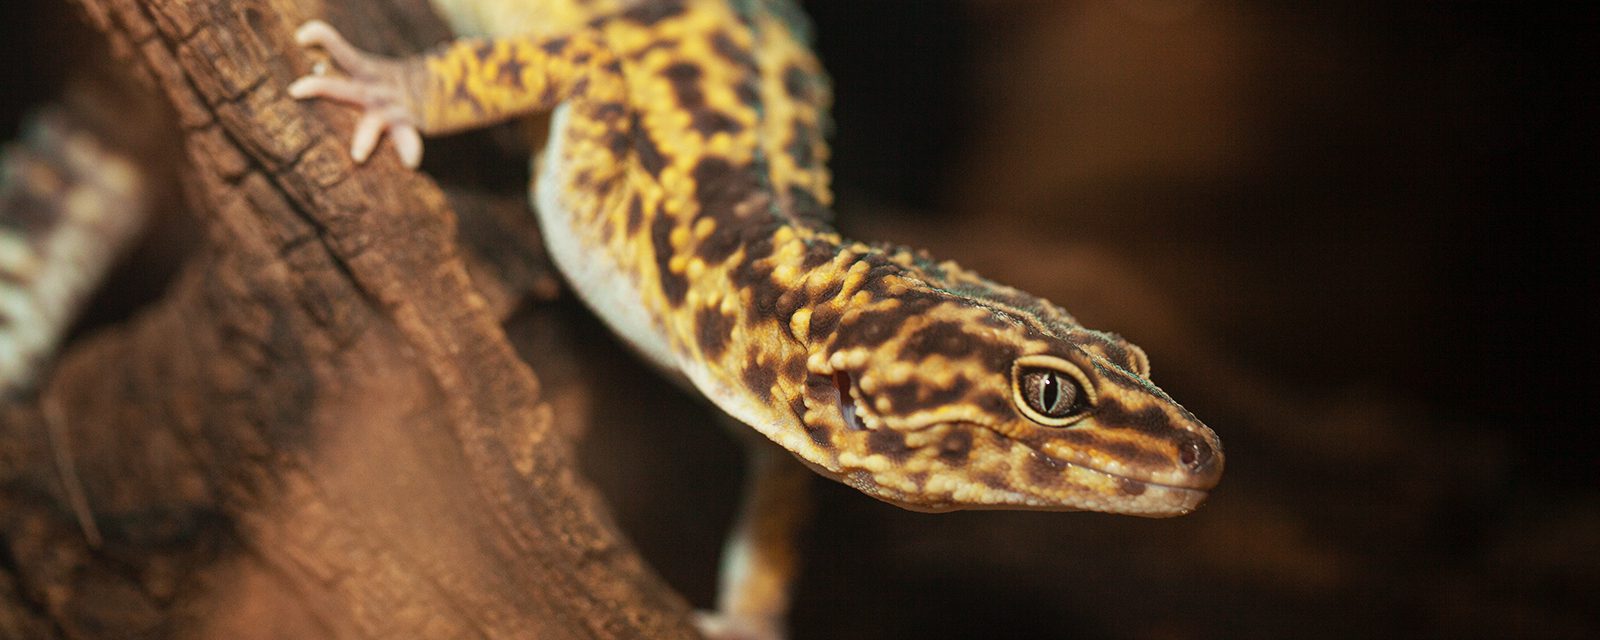 Leopard gecko in exhibit